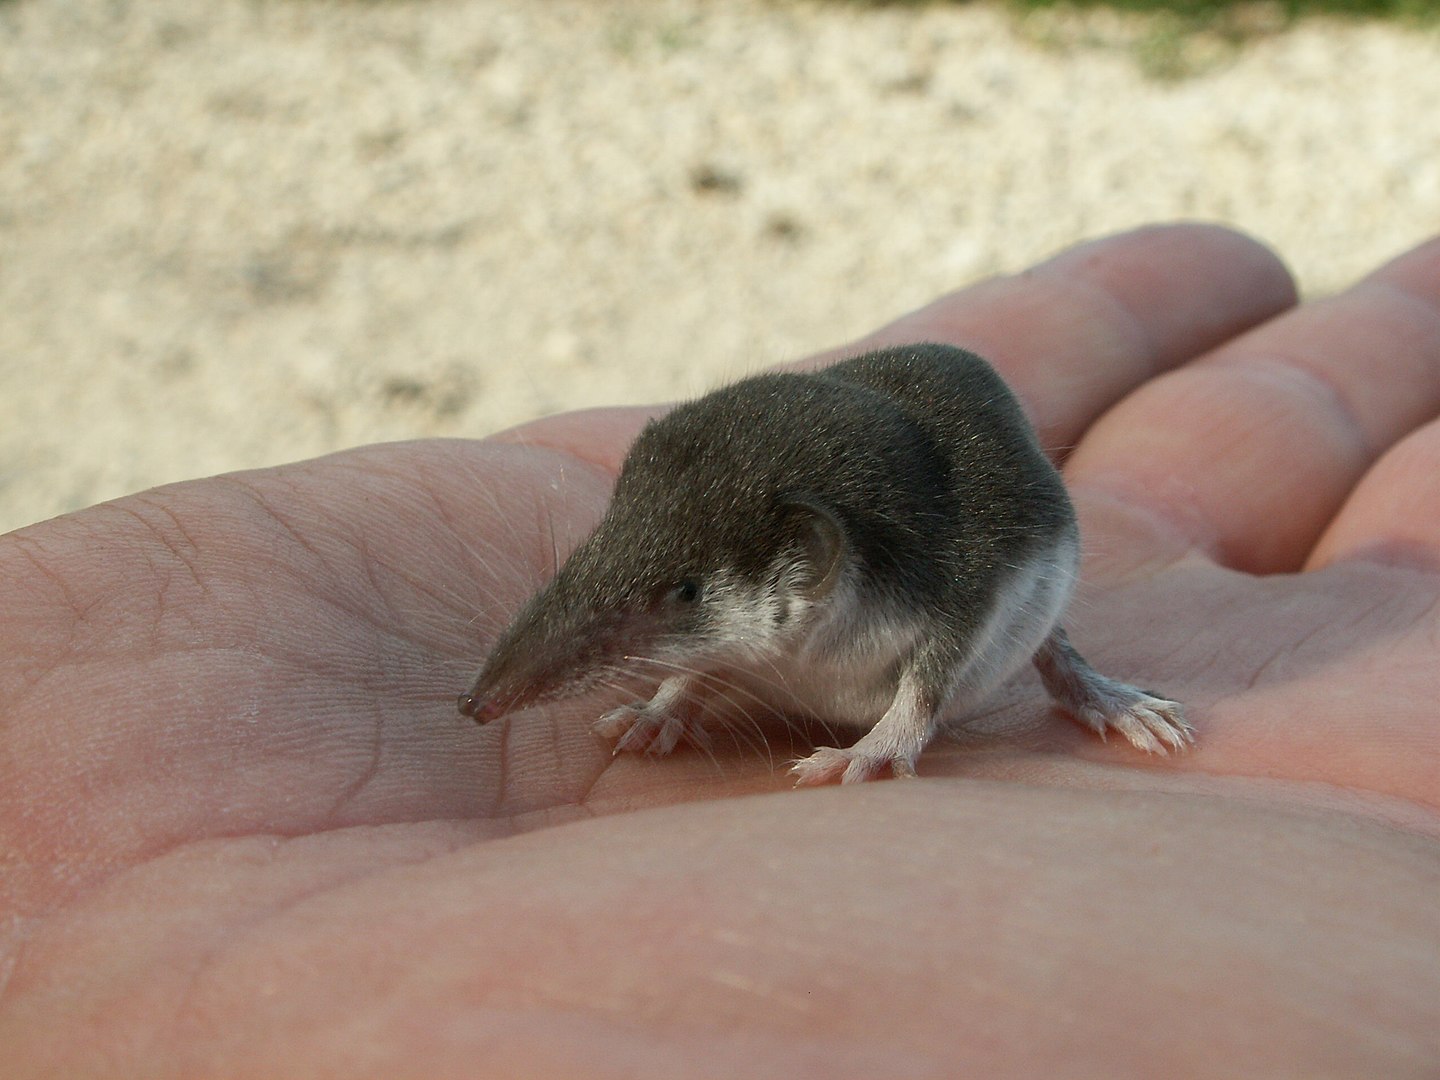 Las musarañas, una especie muy pequeña de mamíferos parecidos a los ratones, son el posible origen del nuevo virus Langya (Foto: Wikimedia).